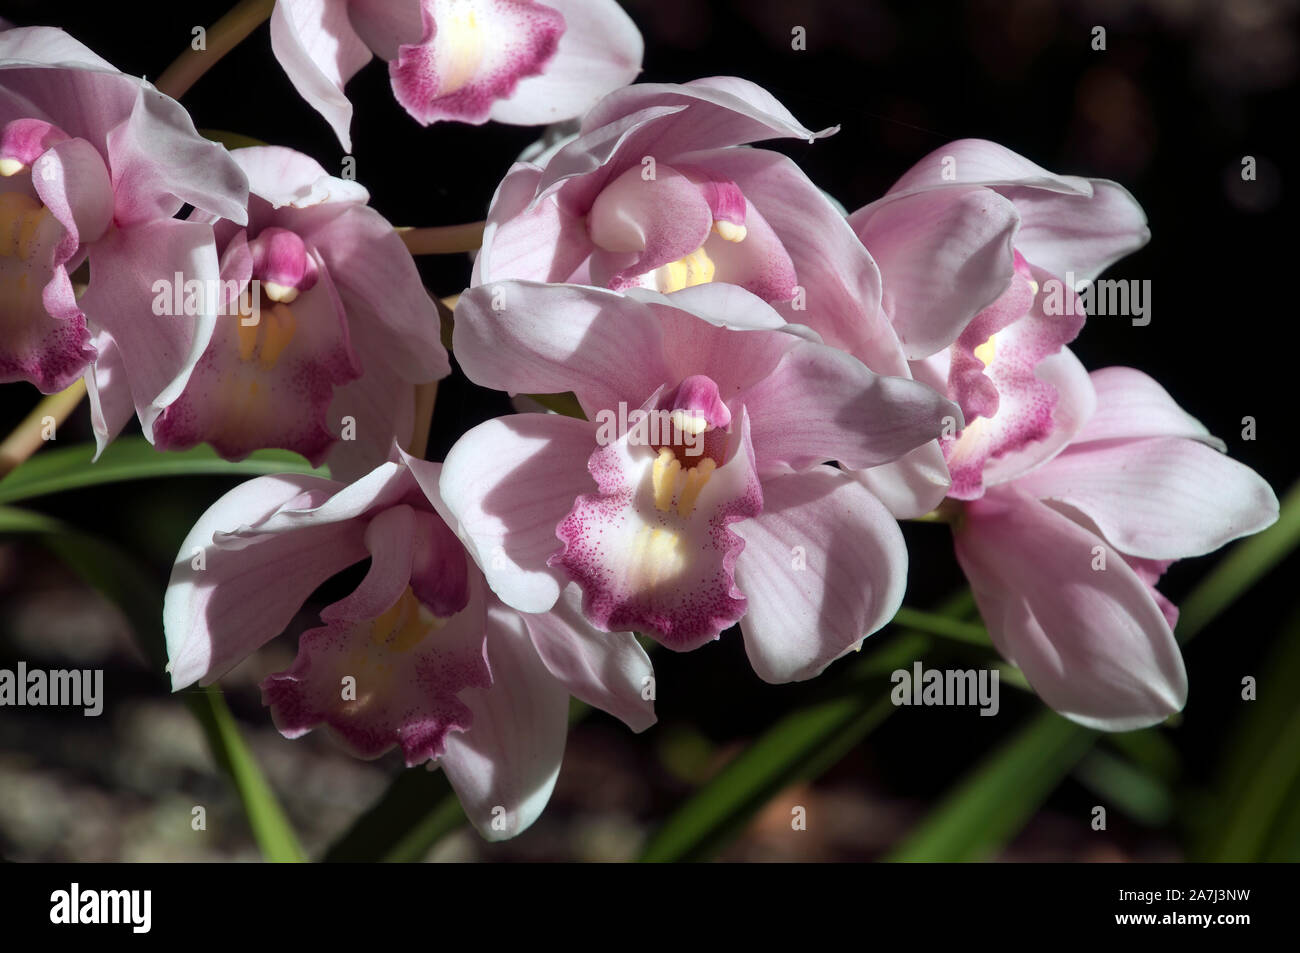 Sydney Australia, stem of pale mauve orchid flowers Stock Photo